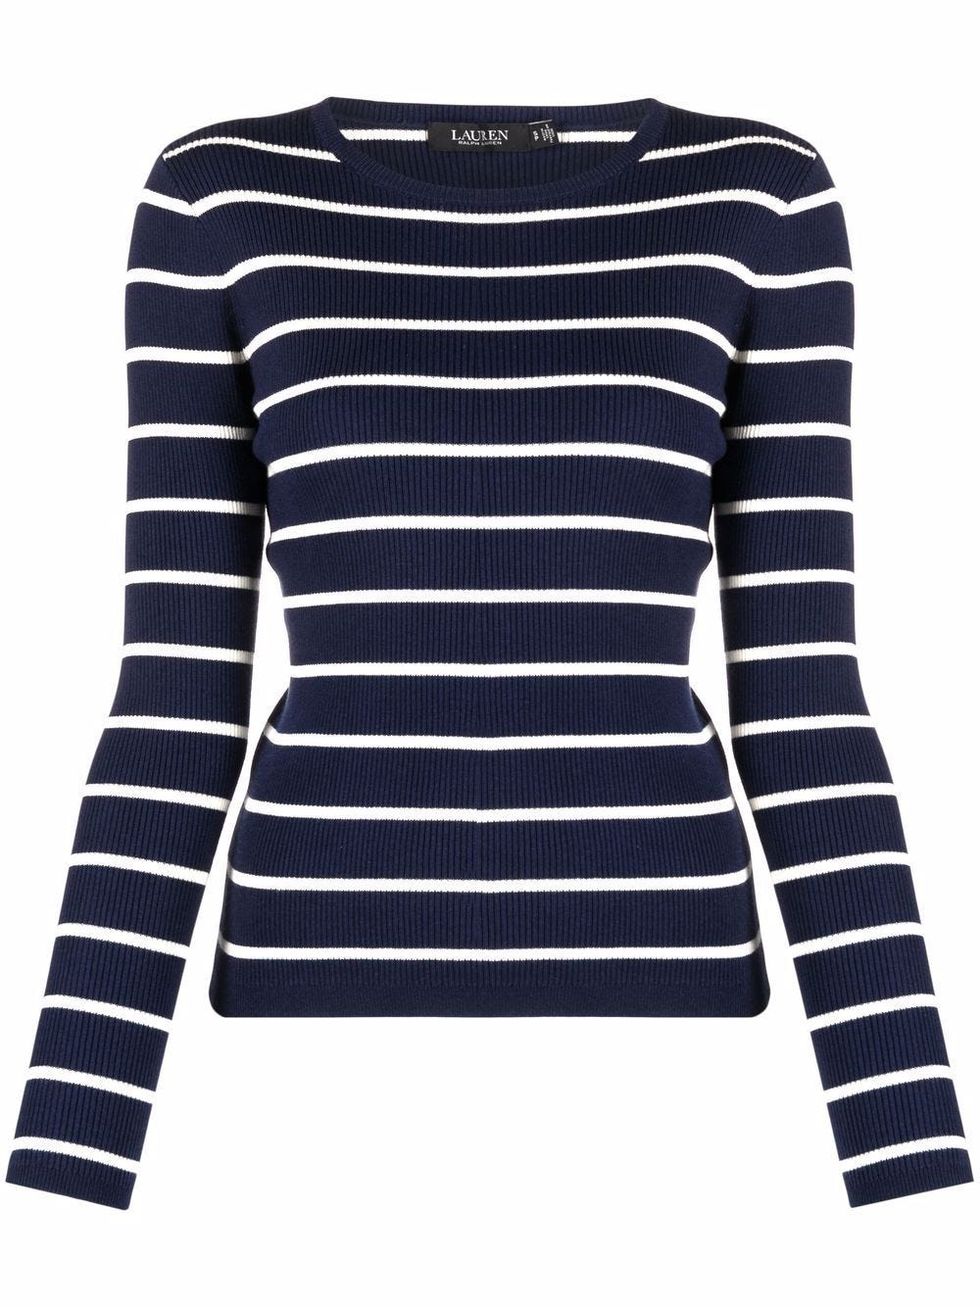 Breton-Striped Knit Top